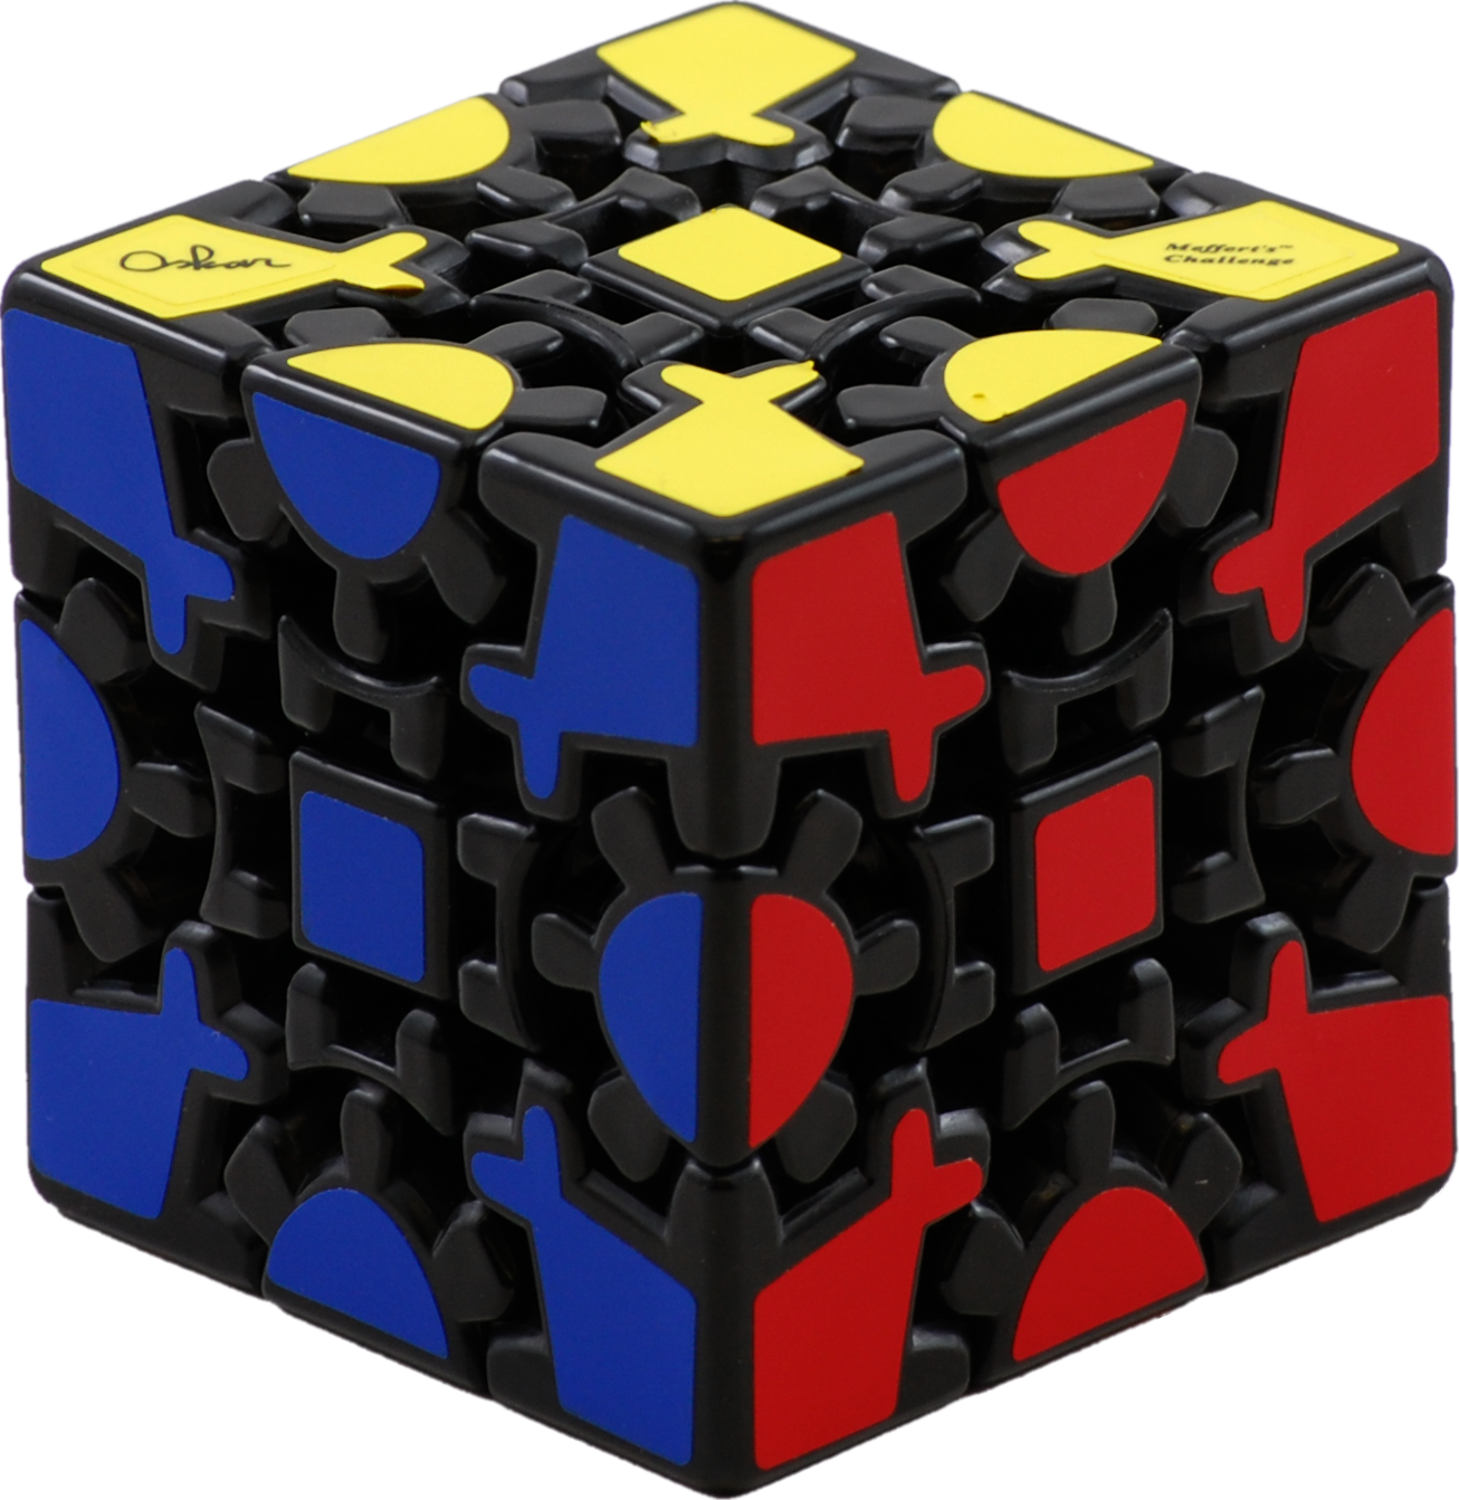 Gear cube. Гир Кьюб. Кубик Рубика Геар куб. Шестеренчатый кубик Рубика 3х3. Шестеренчатый кубик Рубика Cube Puzzle.